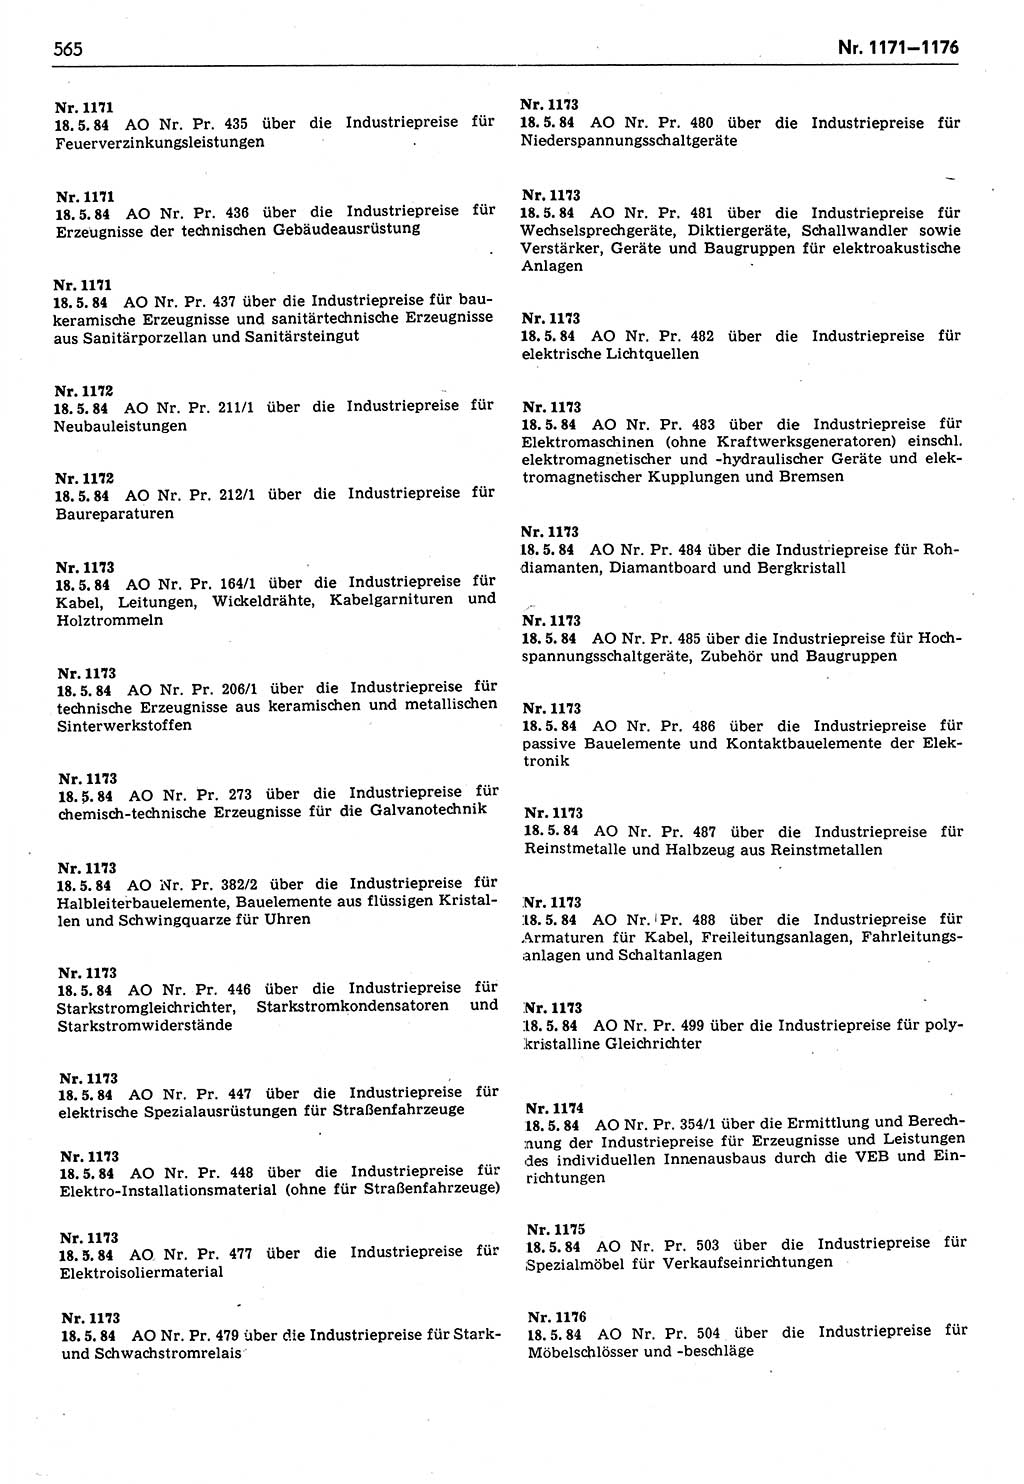 Das geltende Recht der Deutschen Demokratischen Republik (DDR) 1949-1988, Seite 565 (Gelt. R. DDR 1949-1988, S. 565)